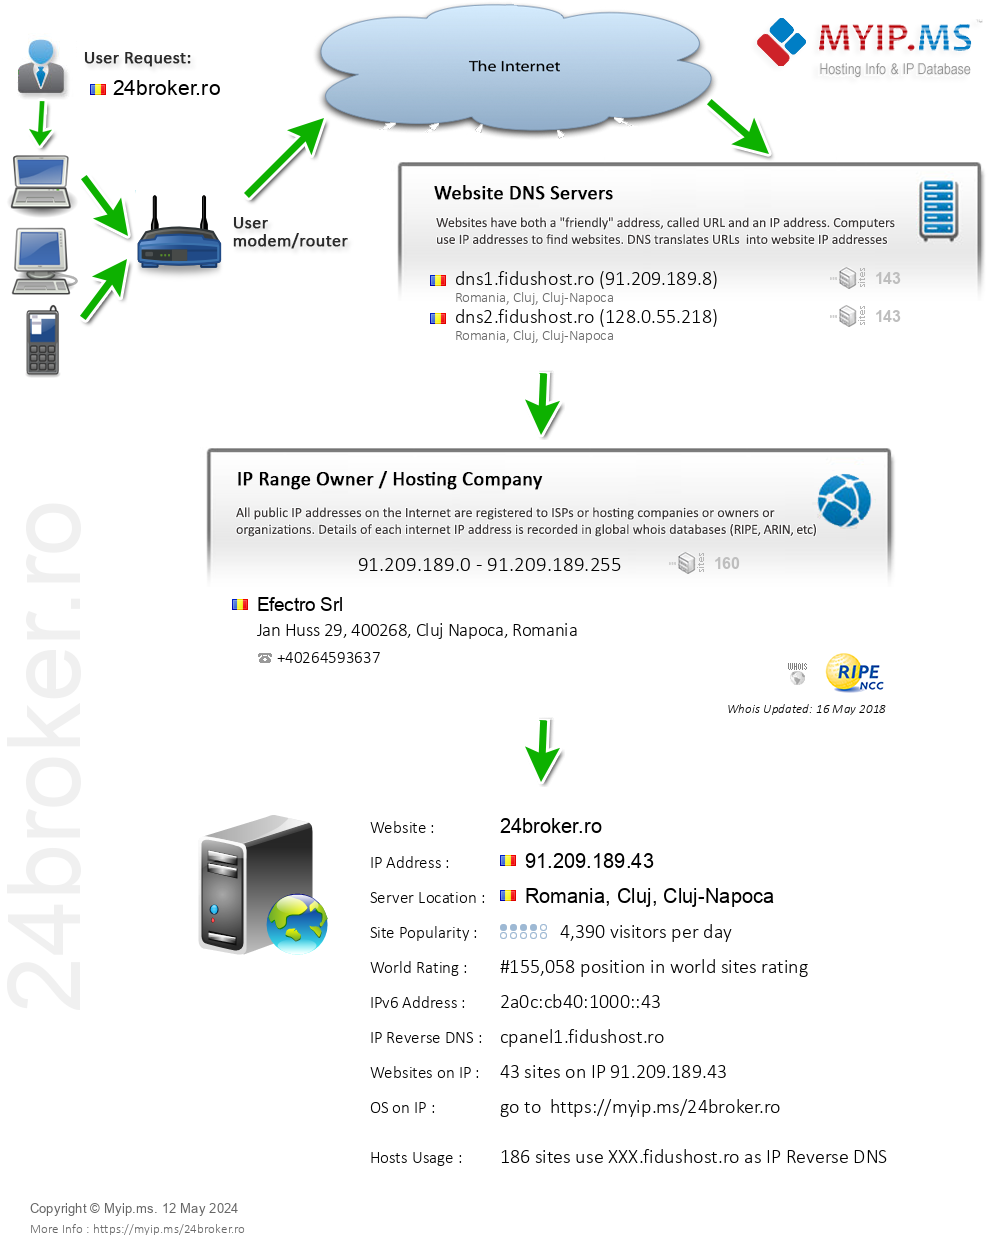 24broker.ro - Website Hosting Visual IP Diagram